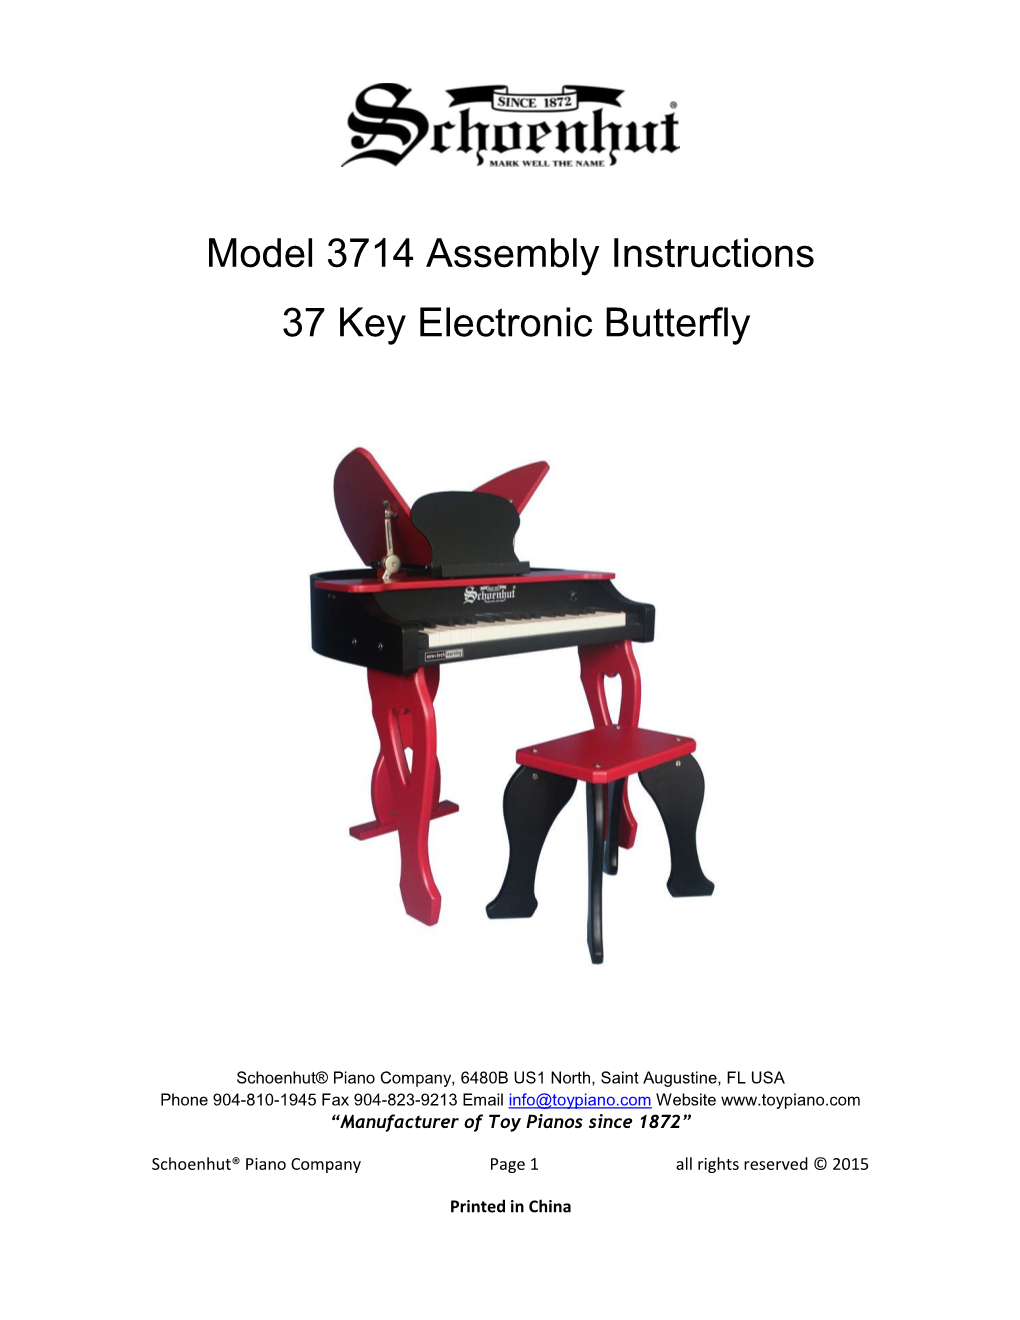 Model 3714 Assembly Instructions 37 Key Electronic Butterfly